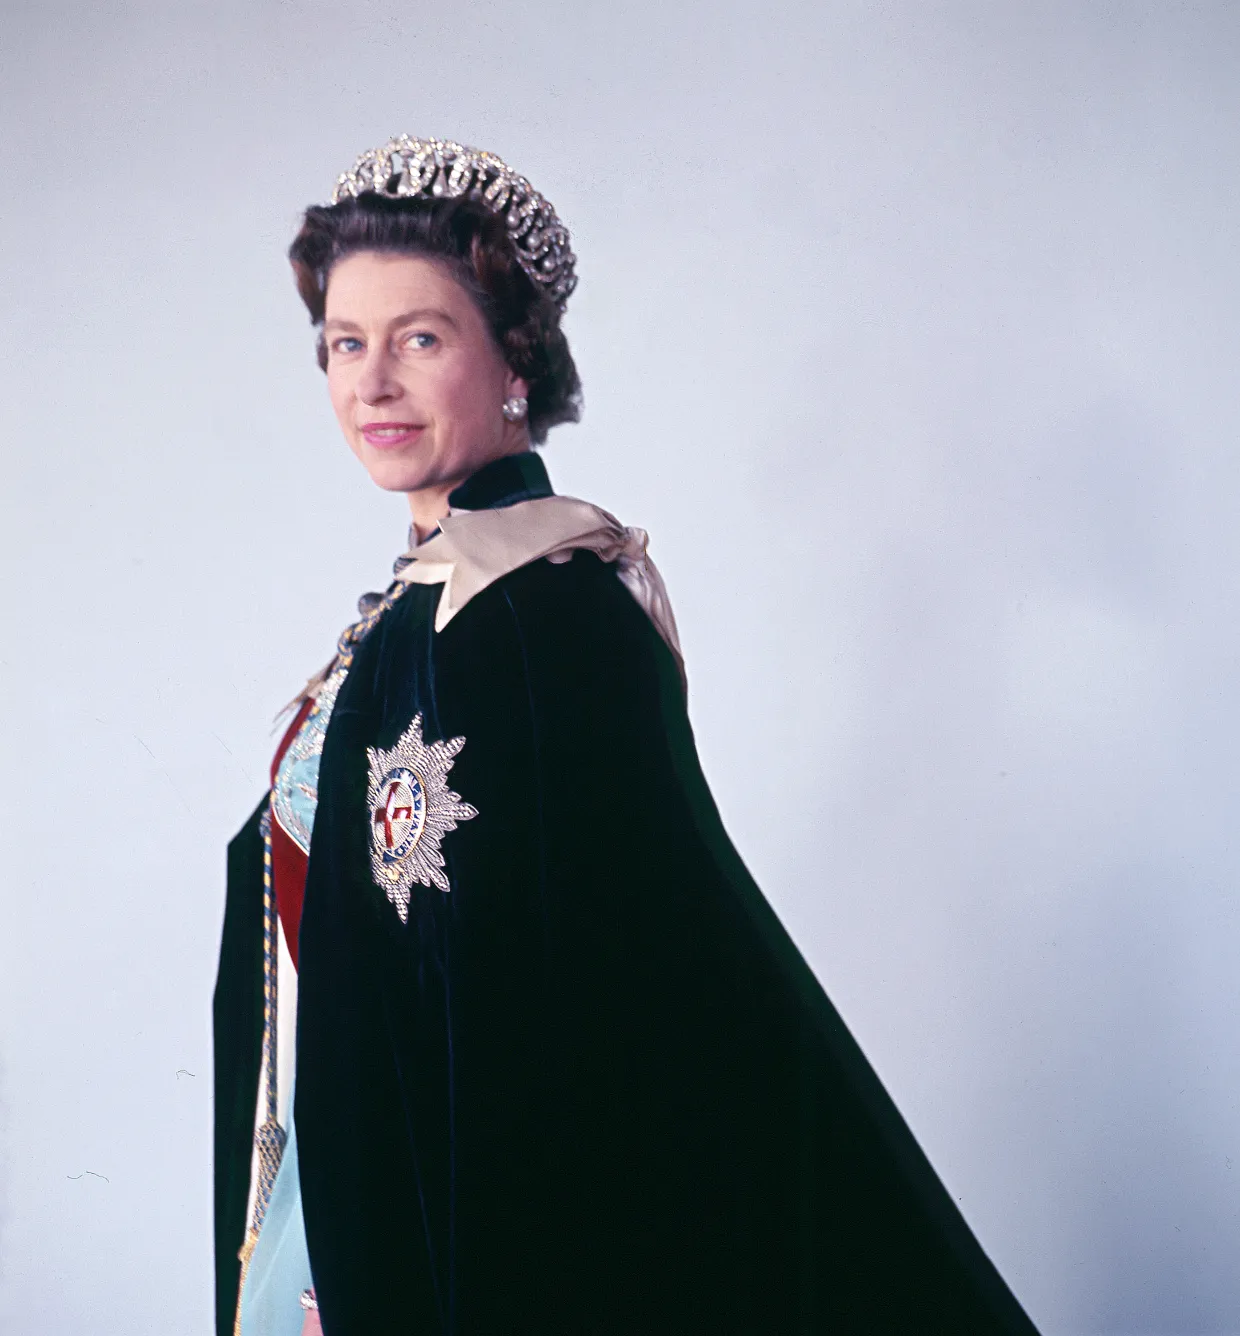 Königin Elizabeth II. lächelt auf einem vom König geliebten Porträt, ein Bild, das seit 1969 nicht mehr gezeigt wurde